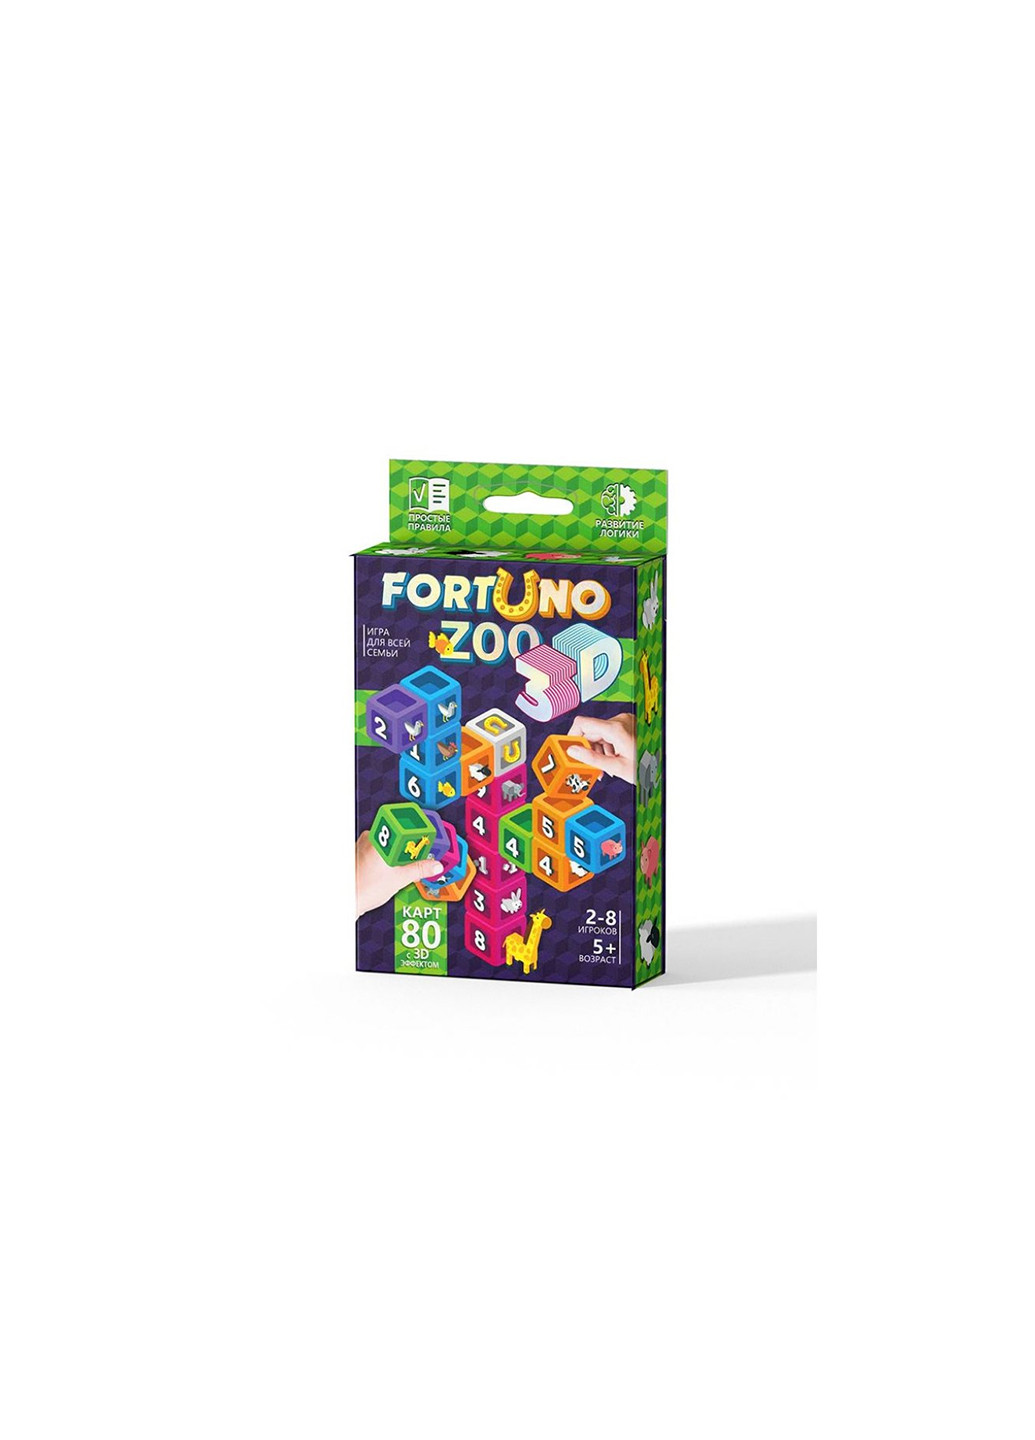 Настольная развивающая игра "Fortuno ZOO 3D" укр Danko Toys g-f3d-02-01u (255292209)